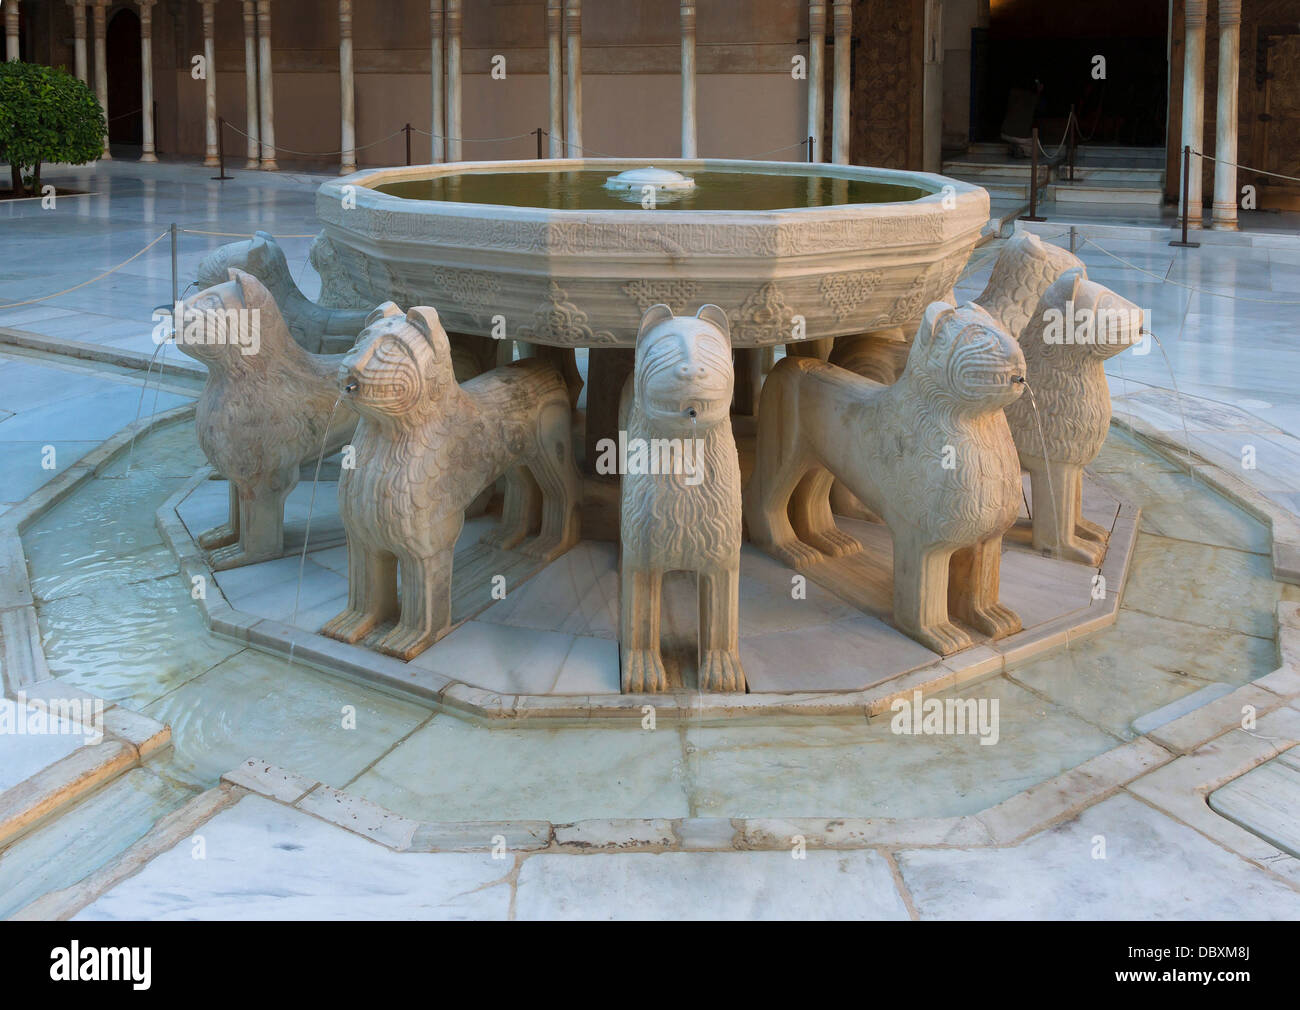 Les douze lions fontaine du Patio de los Leones, quelques jours après la première livraison de l'eau, après plus de 10 ans de res Banque D'Images